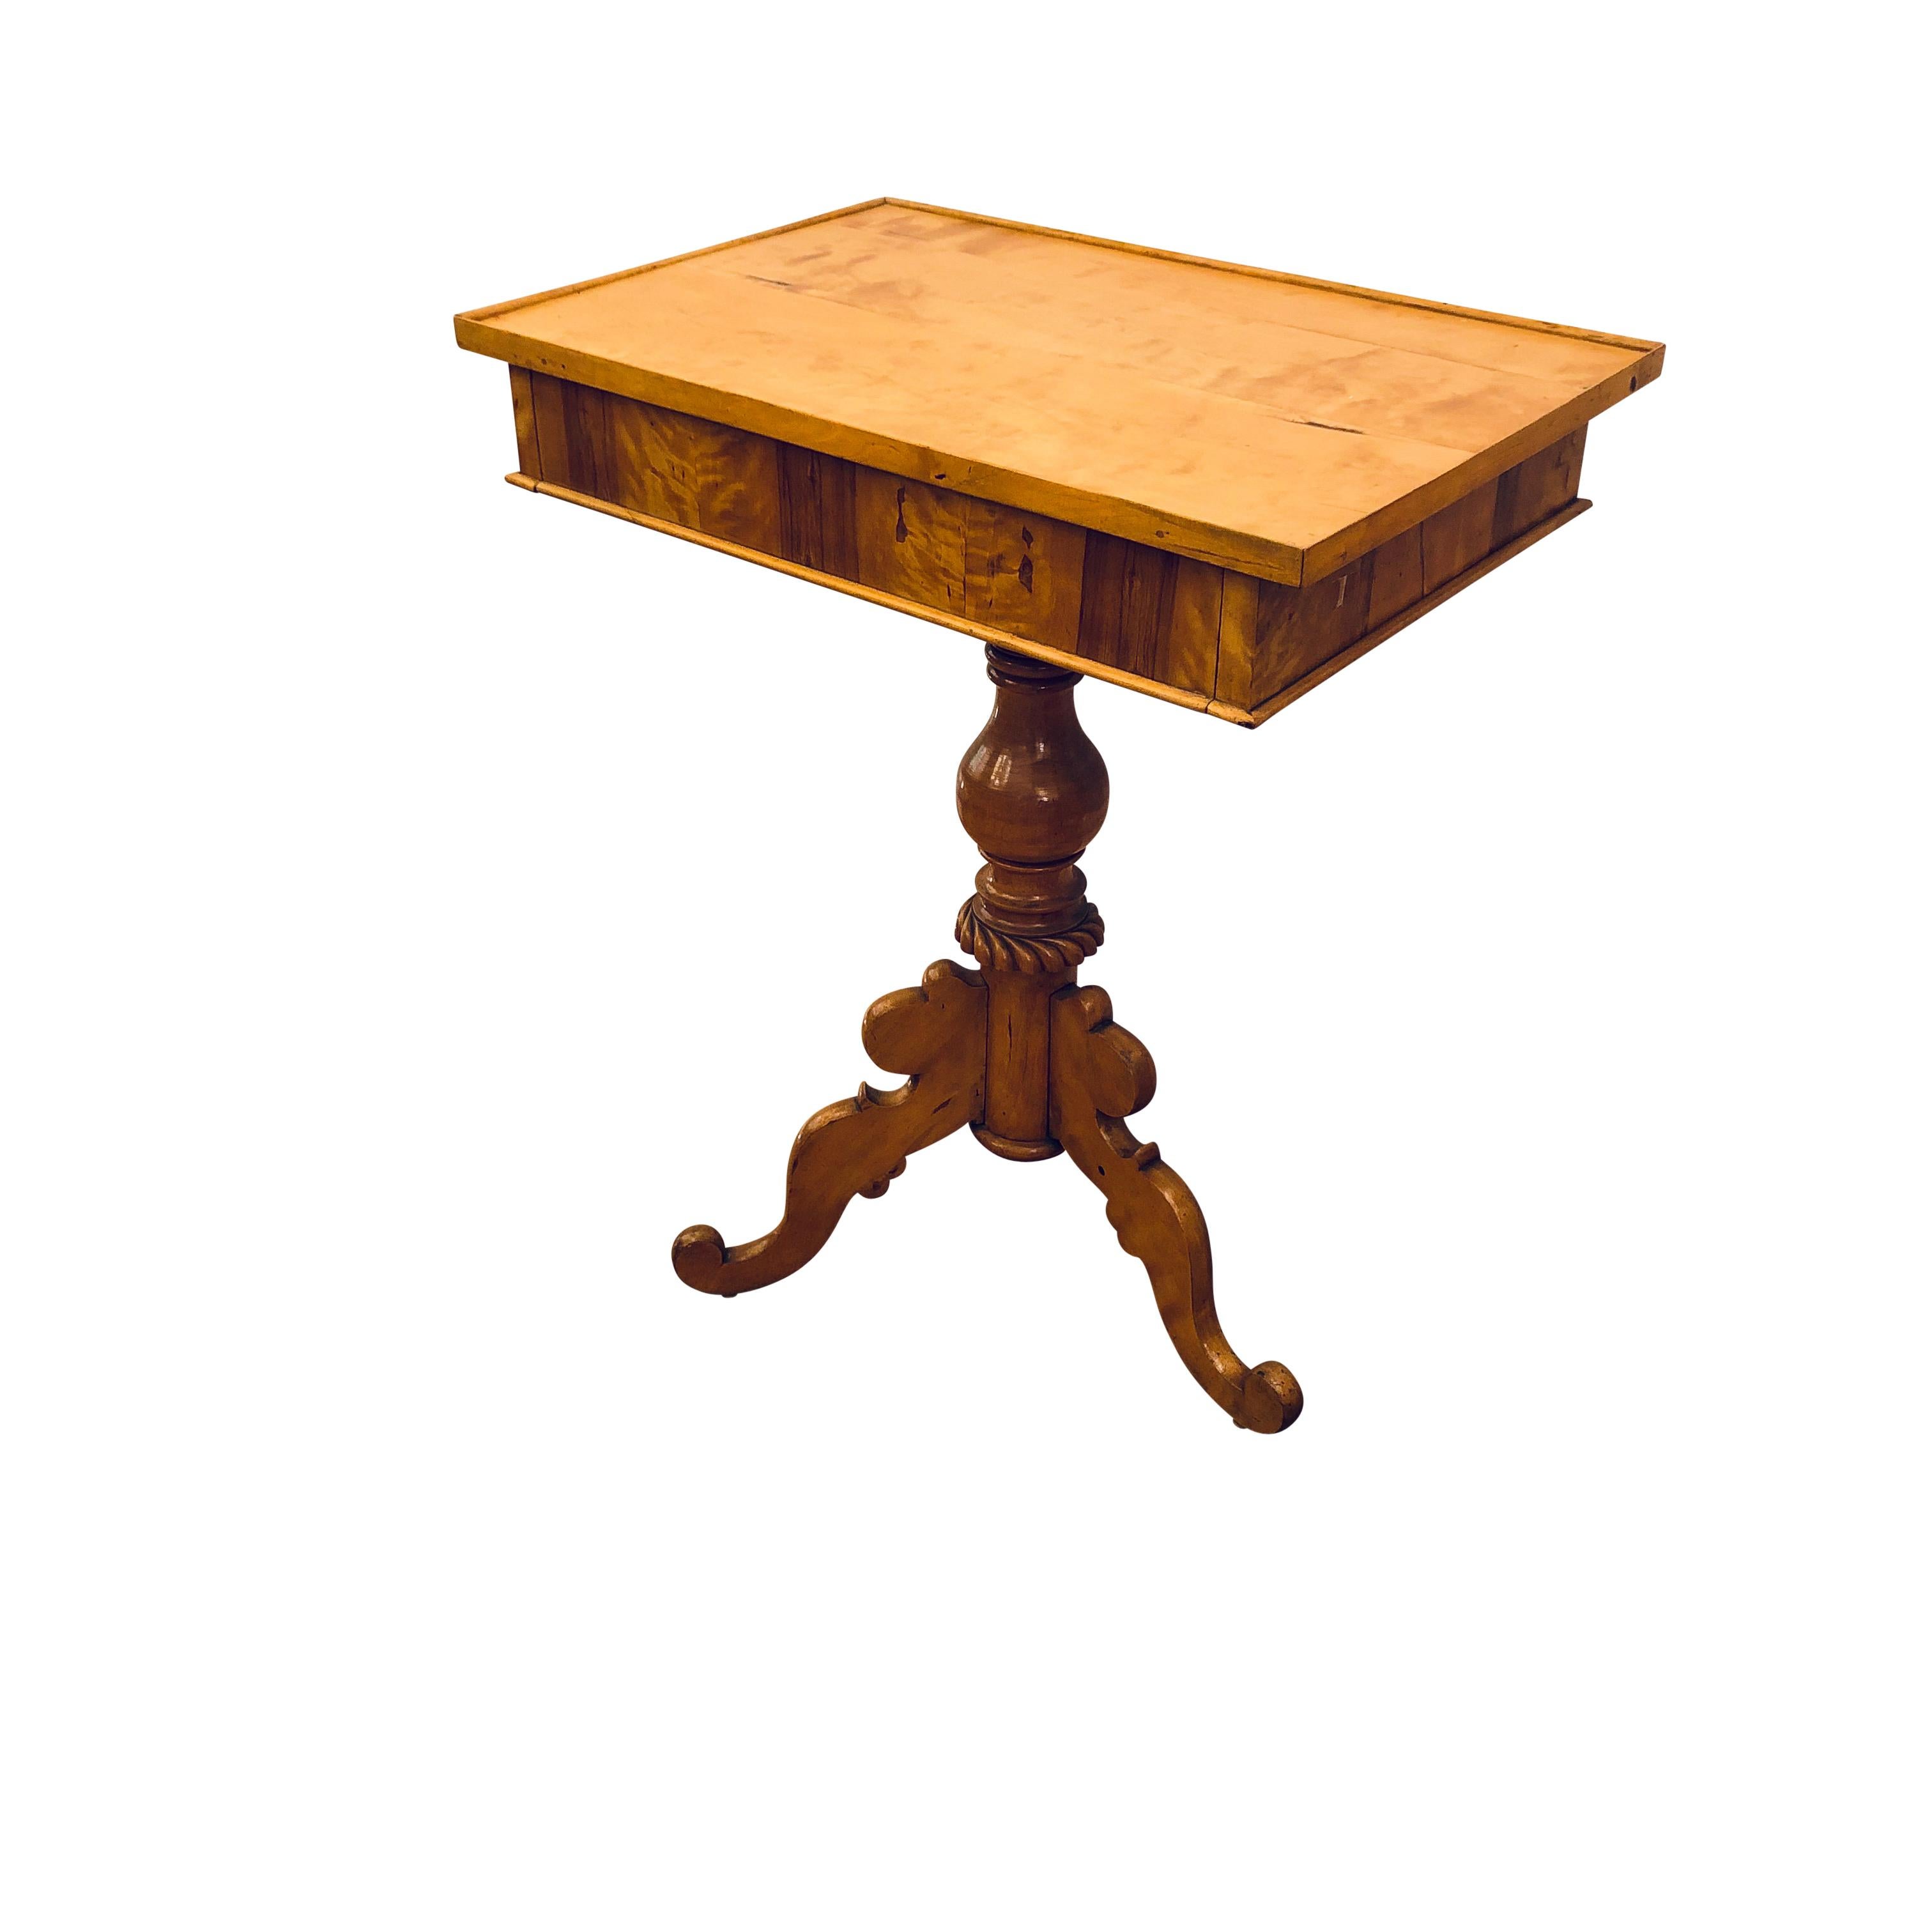 Ein dreibeiniger Sockel ist sehr stabil und trägt eine großzügige Tischfläche, deren Flächen mit erstklassigen, farblich abgestimmten Birkenfurnieren verziert sind.
  